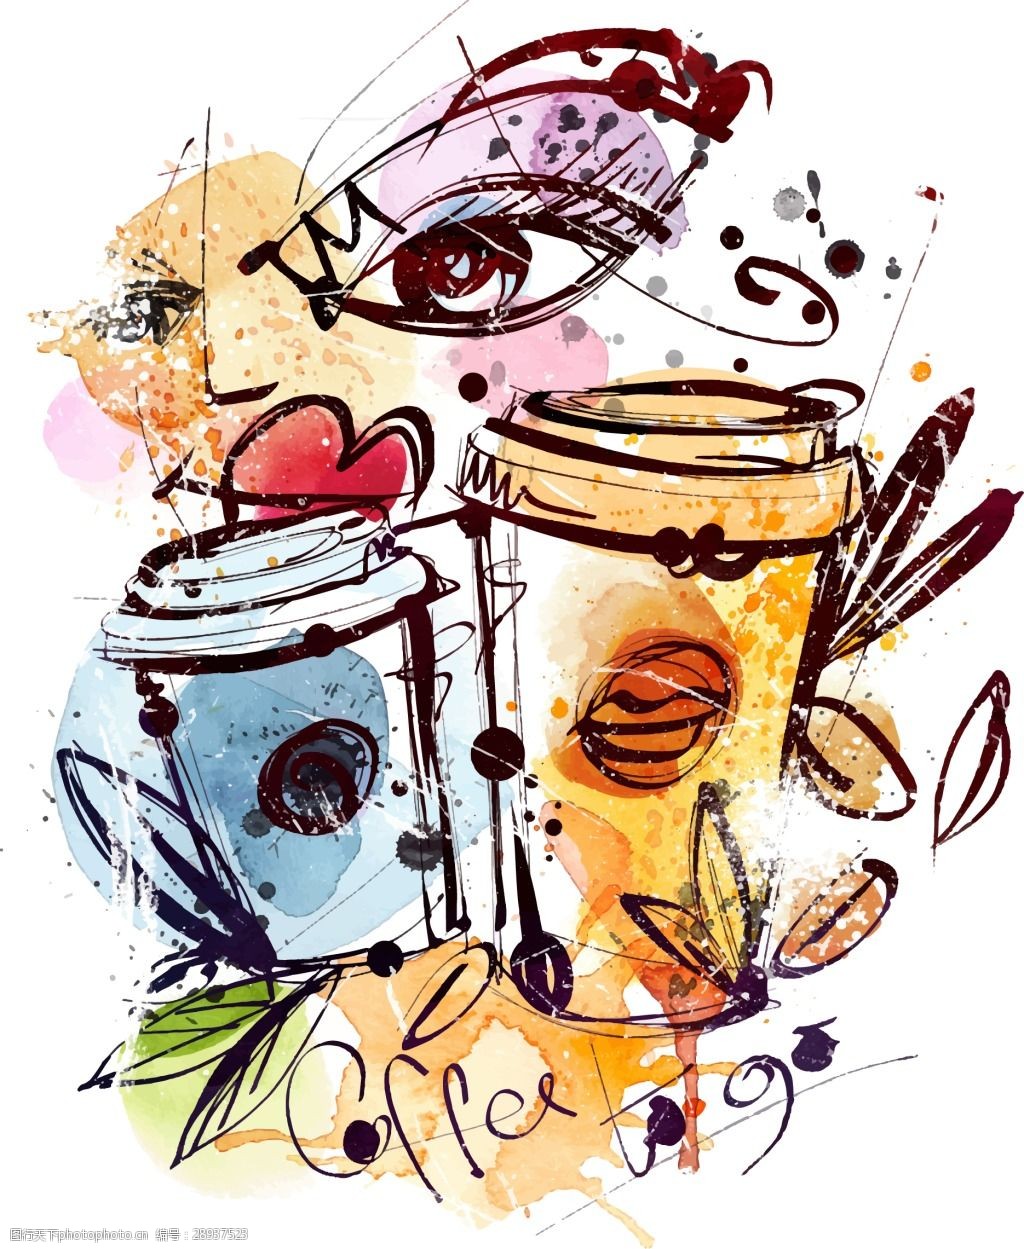 关键词:涂鸦咖啡杯子插画 艺术 时尚 手绘 涂鸦 咖啡 杯子 插画 咖啡